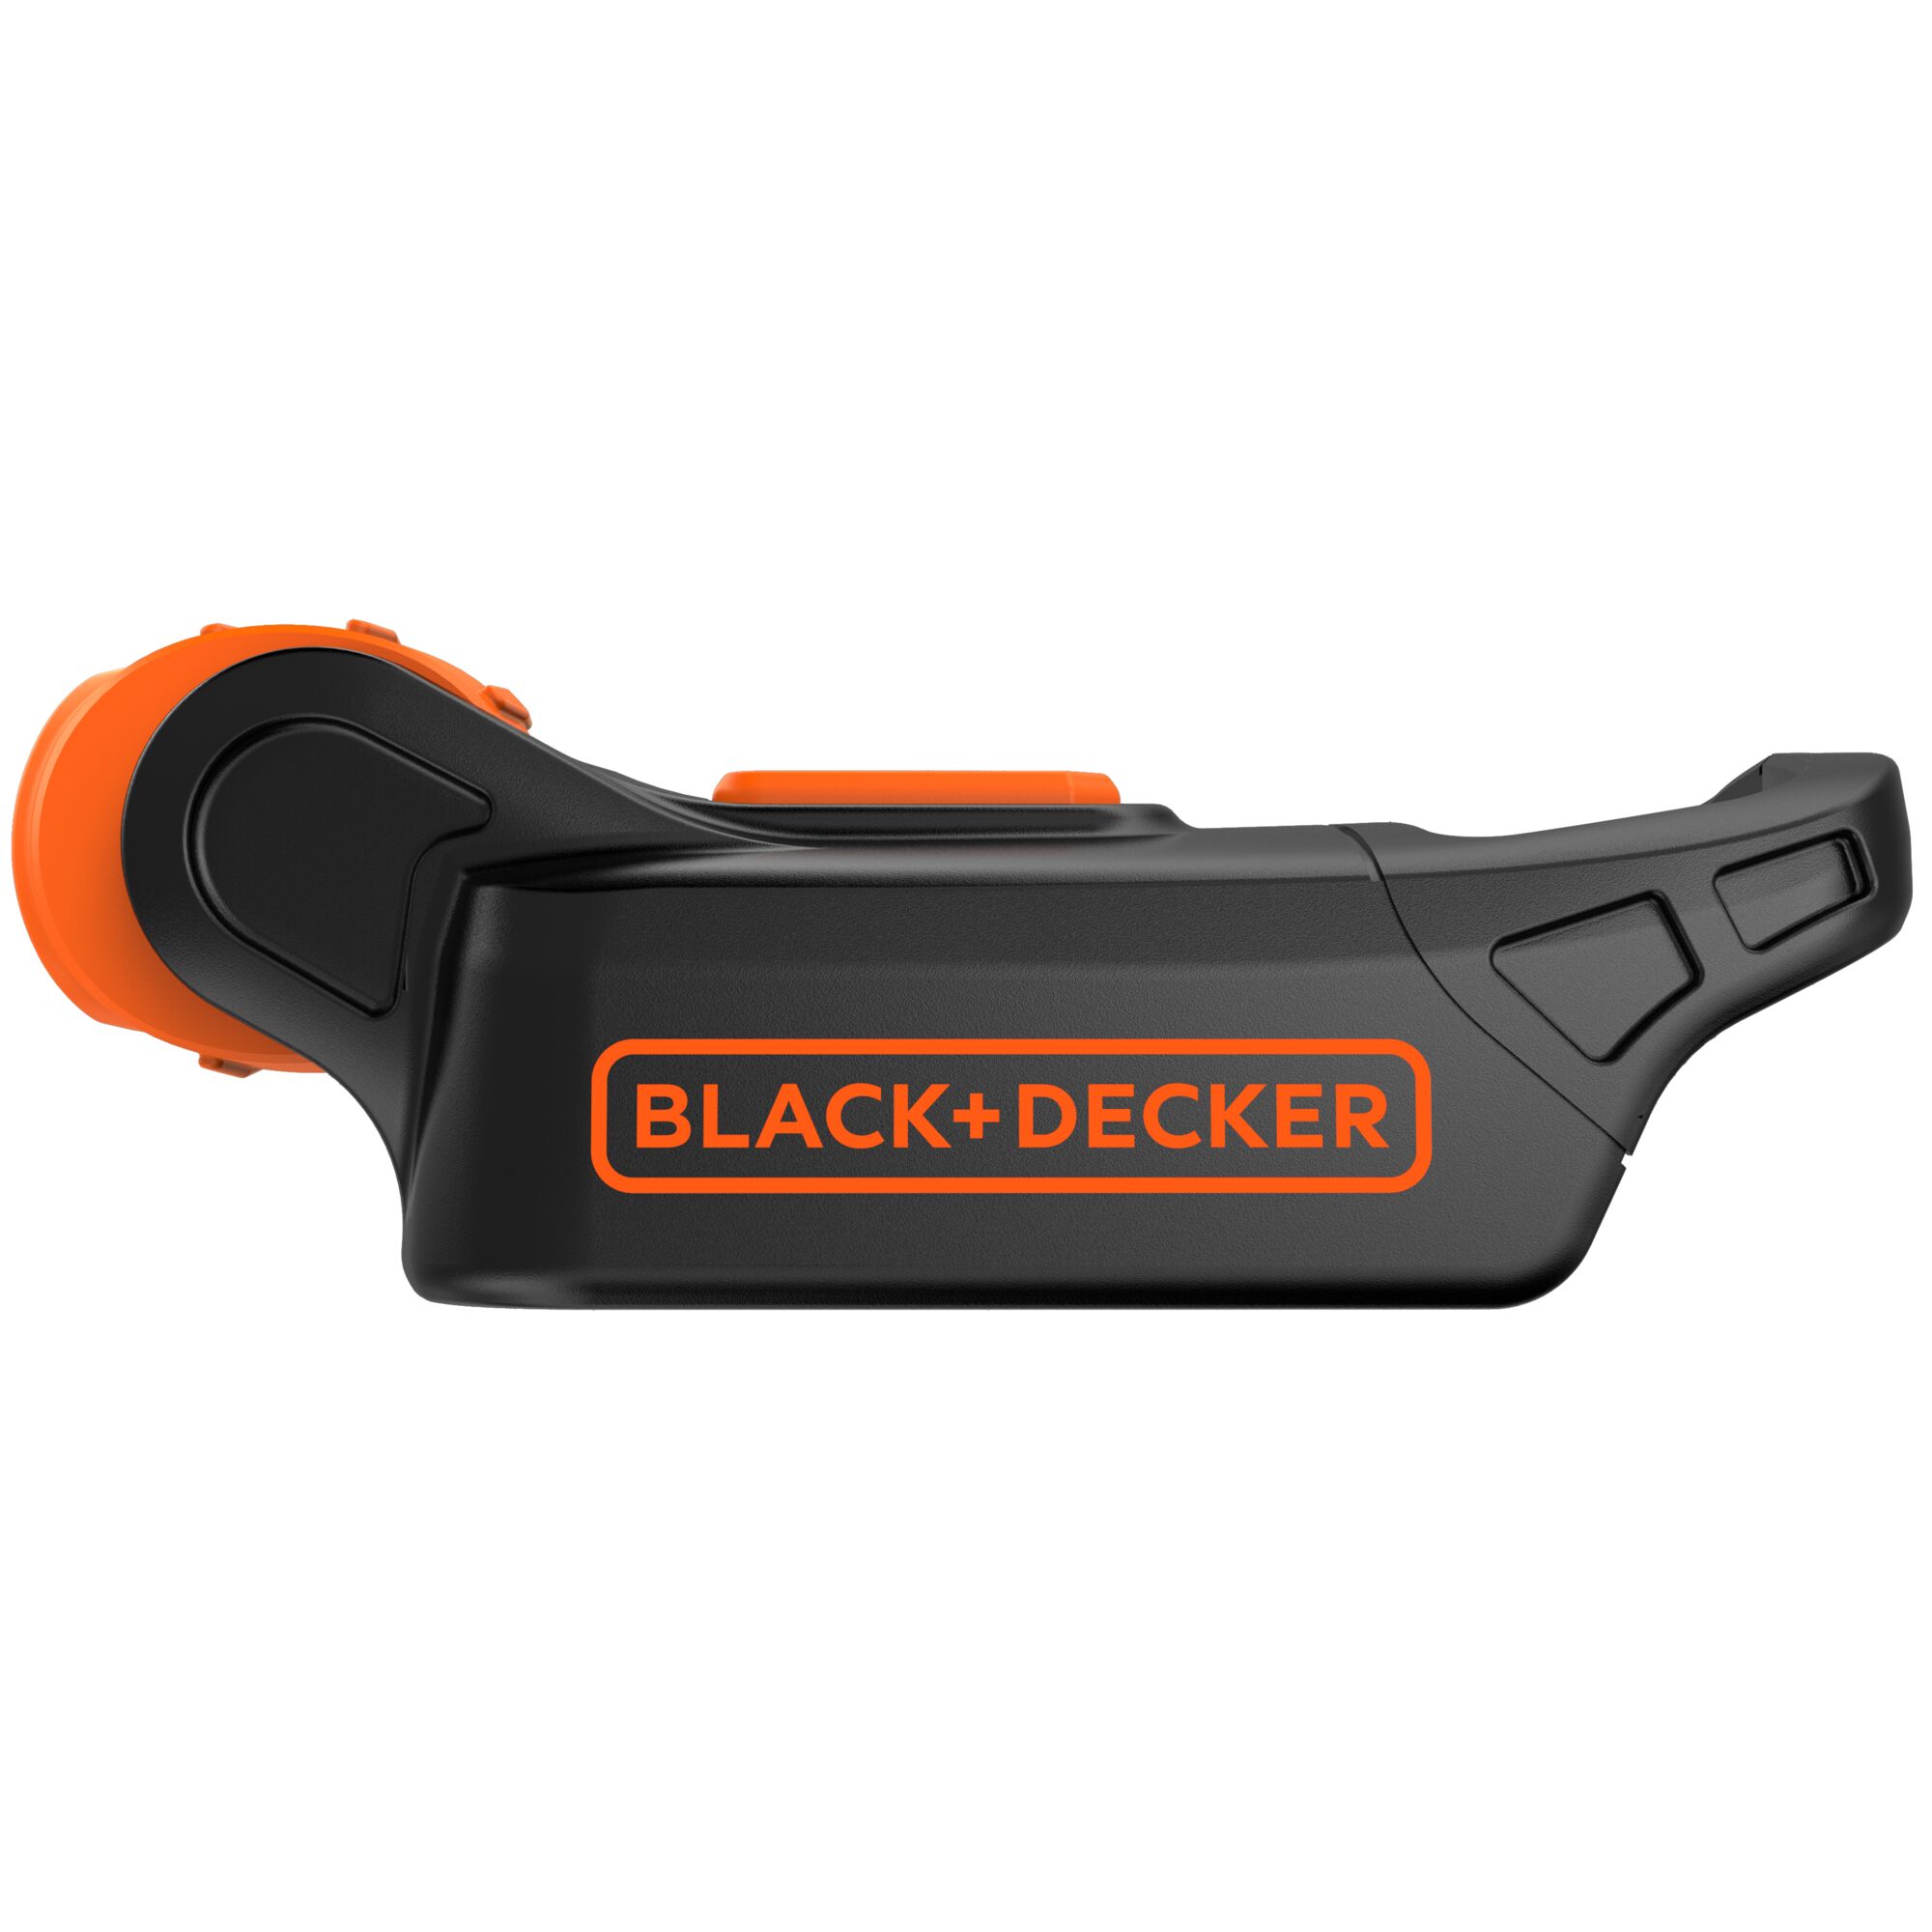 Black Decker BDCCF18N-XJ Lampe torche compact 18 V Batterie et chargeur non inclus + Black Decker BL2018-XJ Batterie 18 V 2 Ah 